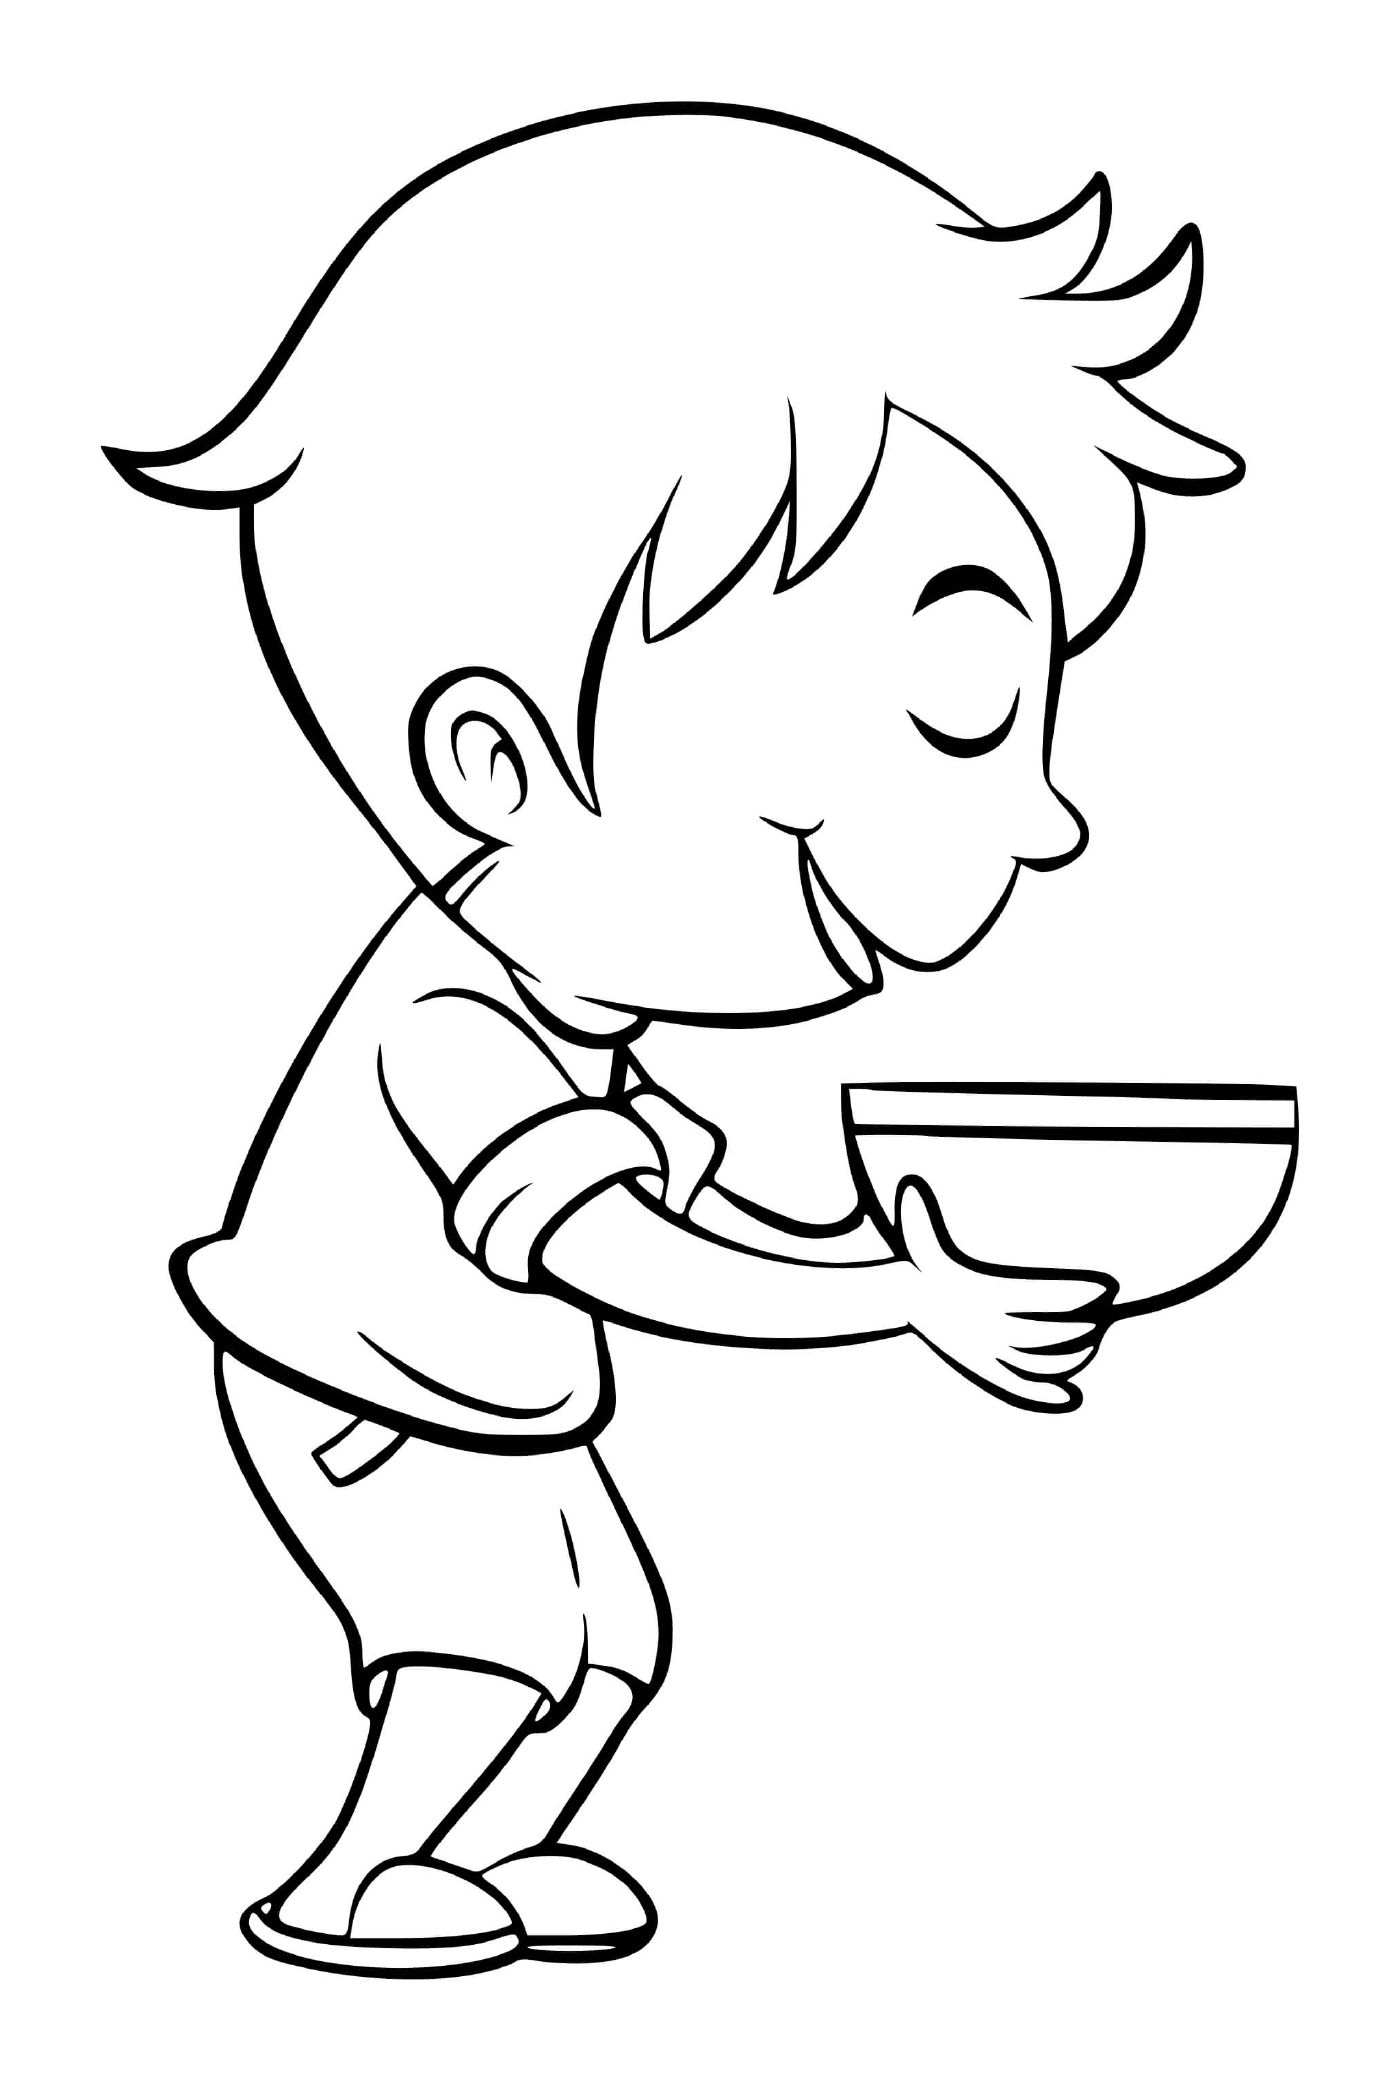  एक लड़का खुशी के साथ सहकुती सूप खाता है 